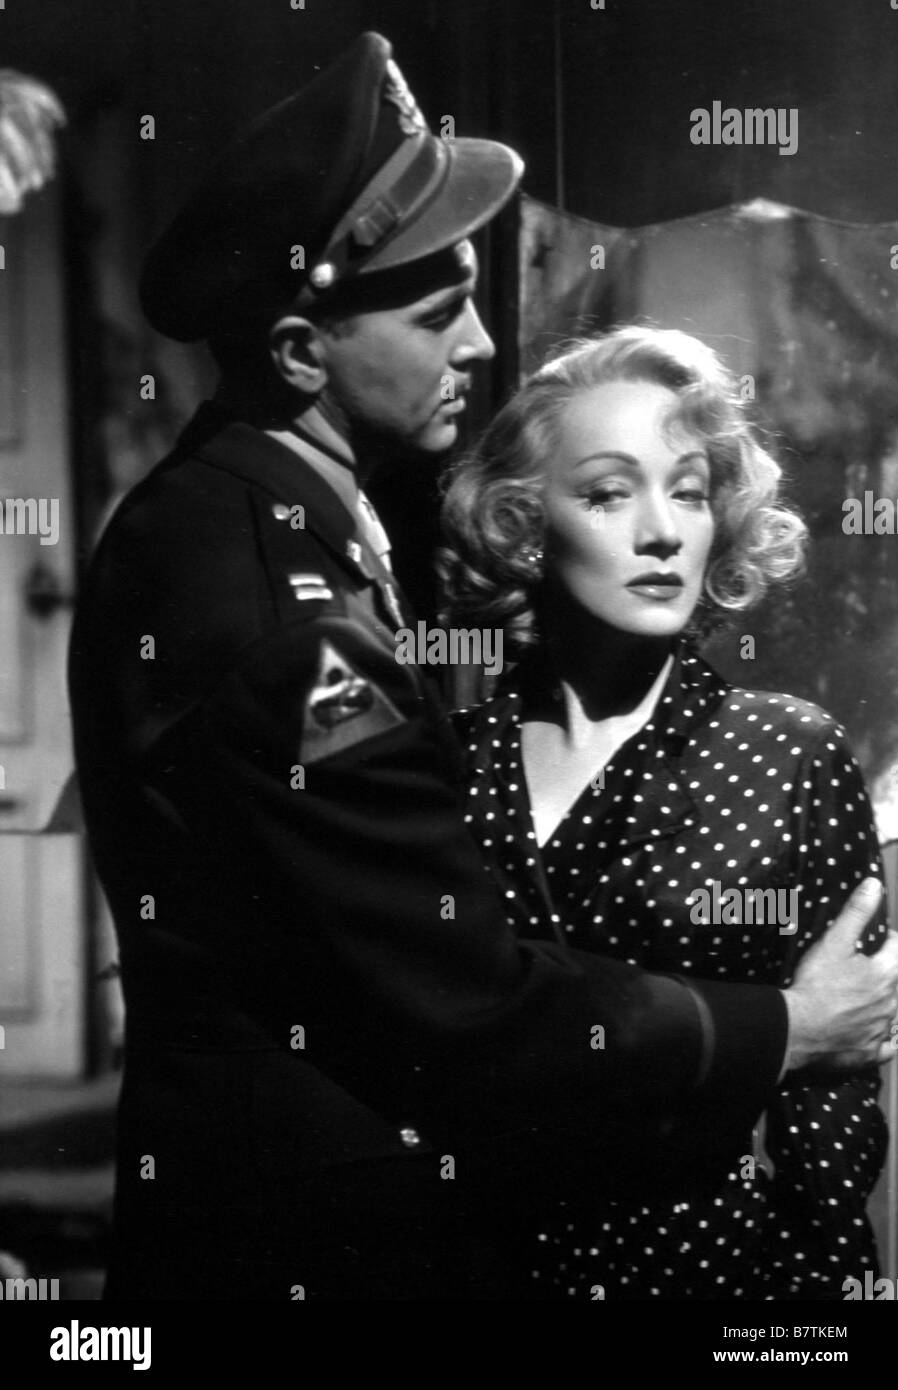 A Foreign Affair Year: 1948 USA Marlene Dietrich, John Lund  Director: Billy Wilder Stock Photo